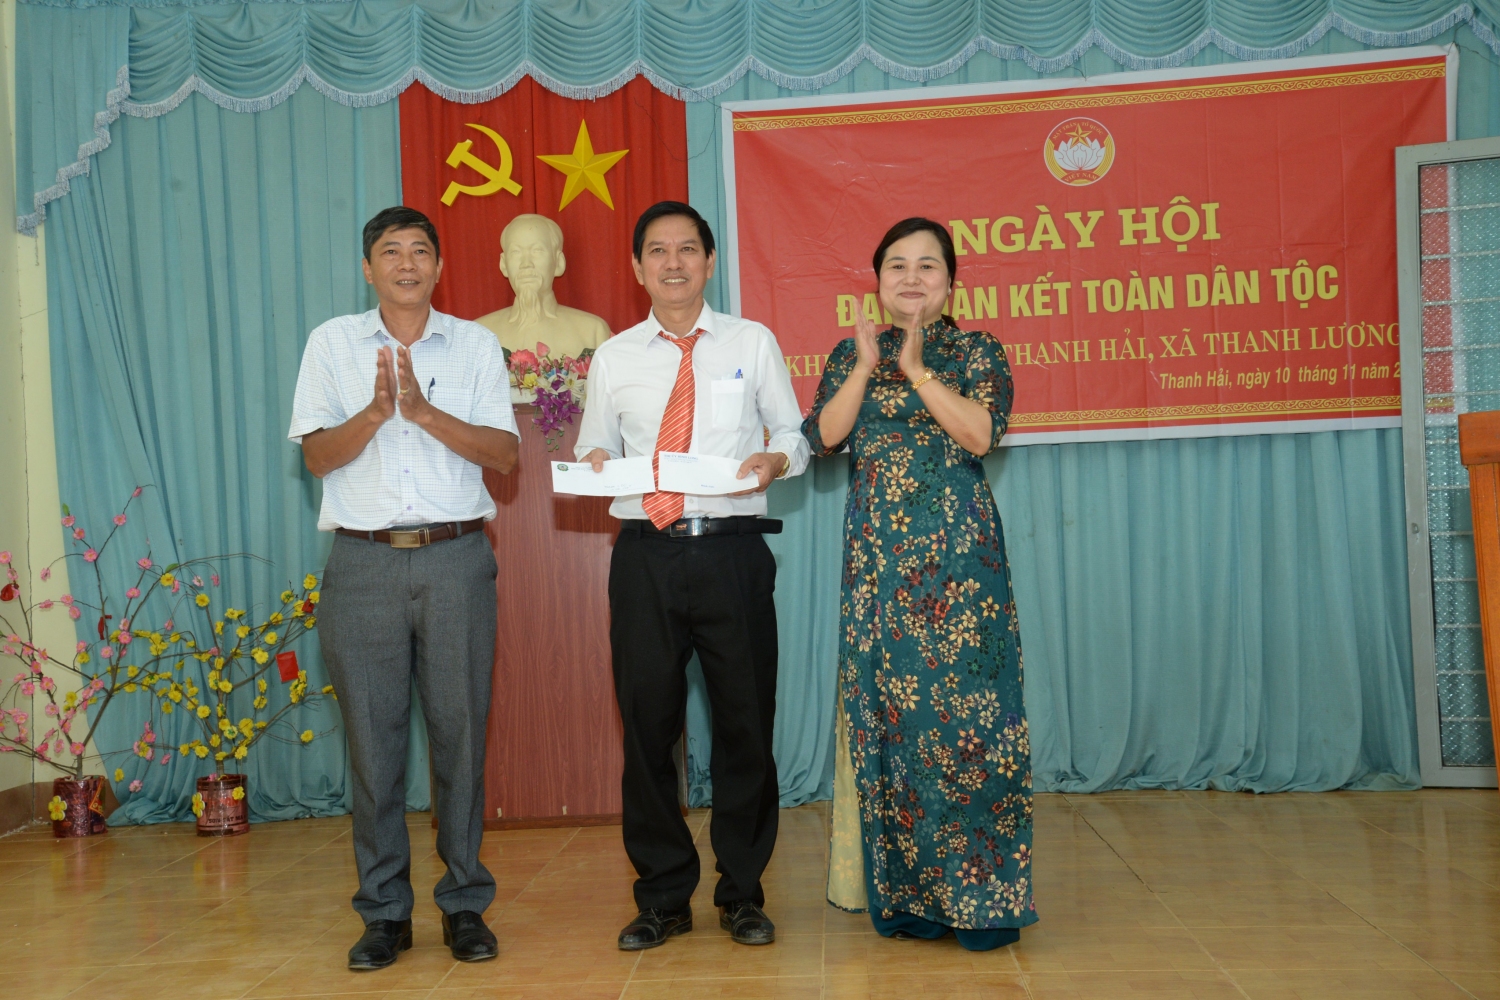 Phó Bí thư Thường trực Thị ủy Tạ Thu Thủy xã trao giấy chứng nhận ấp Thanh Hải đạt danh hiệu “Khu dân cư văn hóa” năm 2022